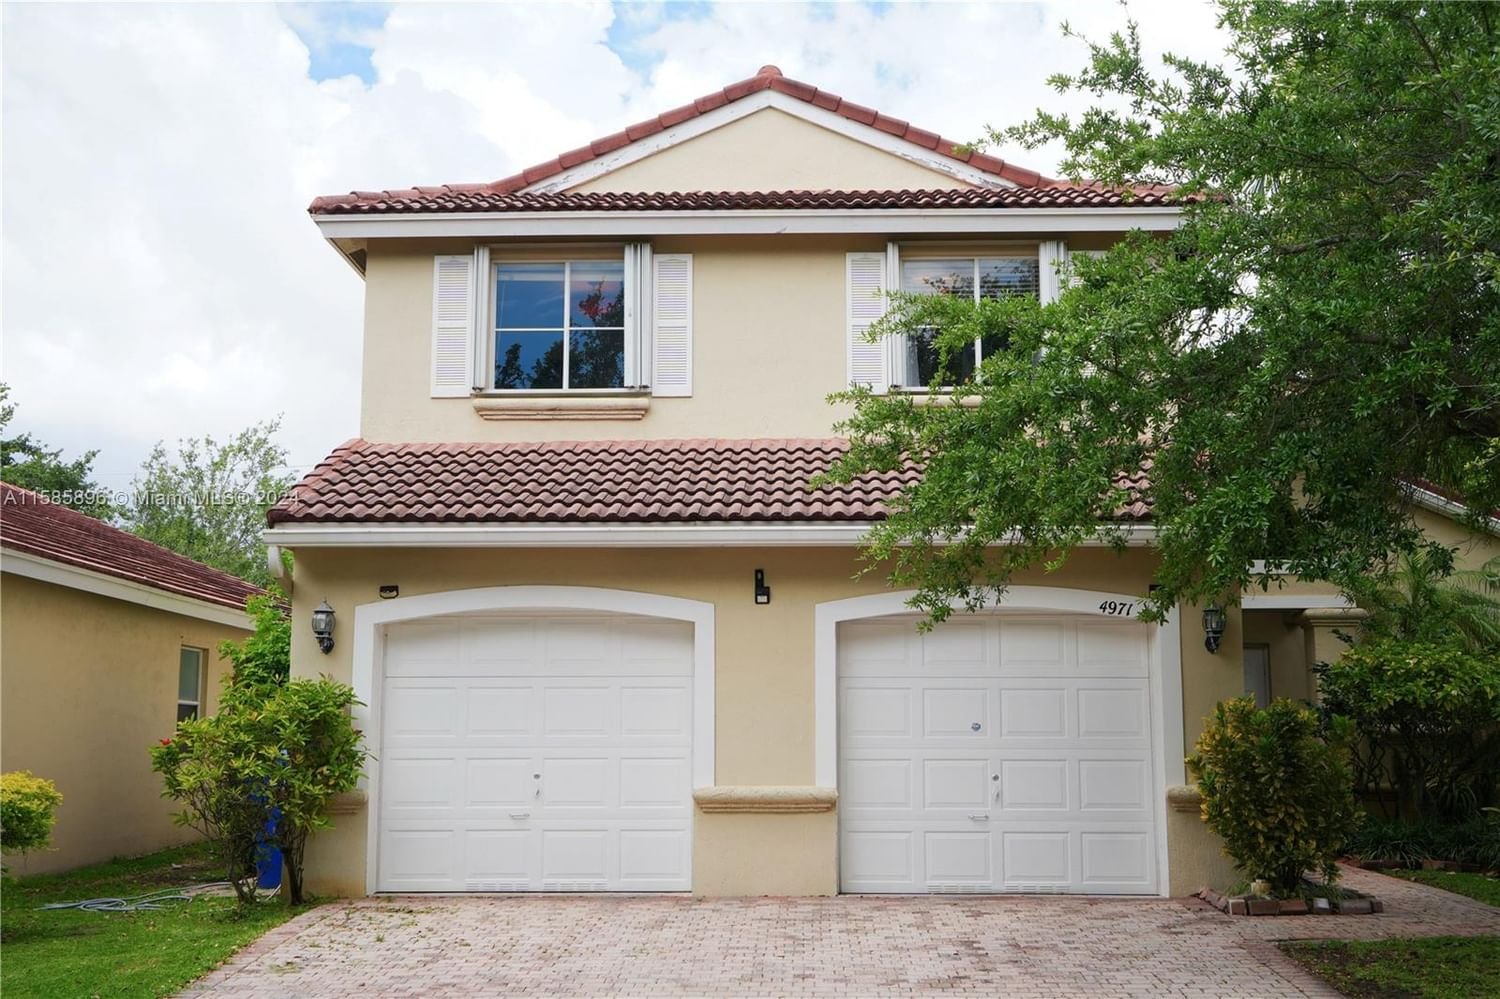 Real estate property located at 4971 34th Ter, Broward County, BANYAN OAKRIDGE PLAT, Hollywood, FL